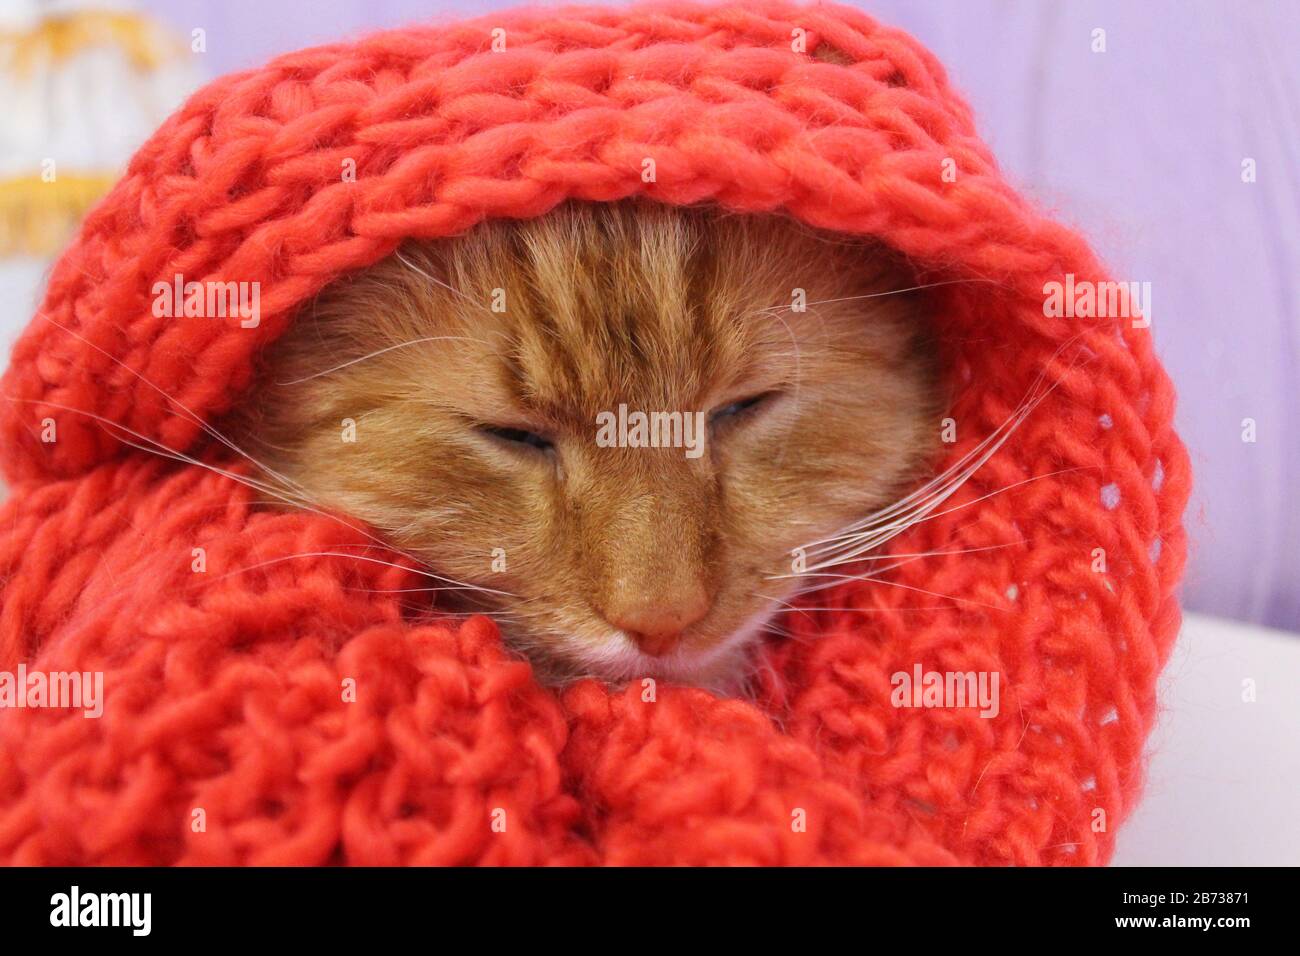 magnifique chat de couleur orange vif dans un foulard en bois rouge attrapez la grippe Banque D'Images